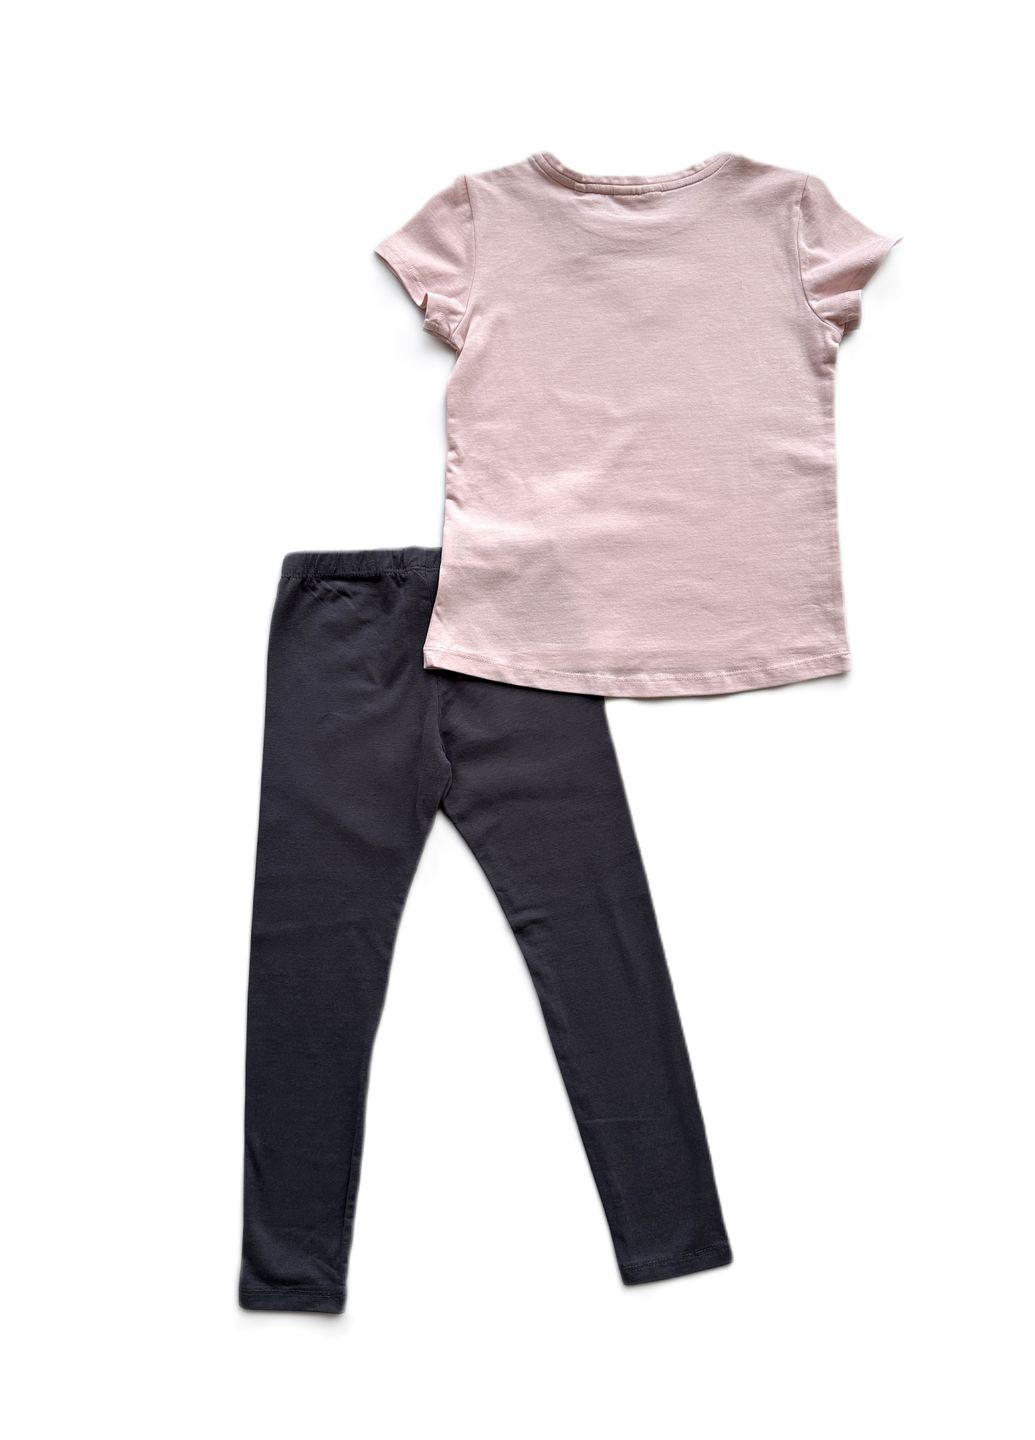 Пудровый летний комплект костюм для девочки футболка пудровая 2000-20+ леггинсы серые трикотажные 2000-96 (116 см) OVS